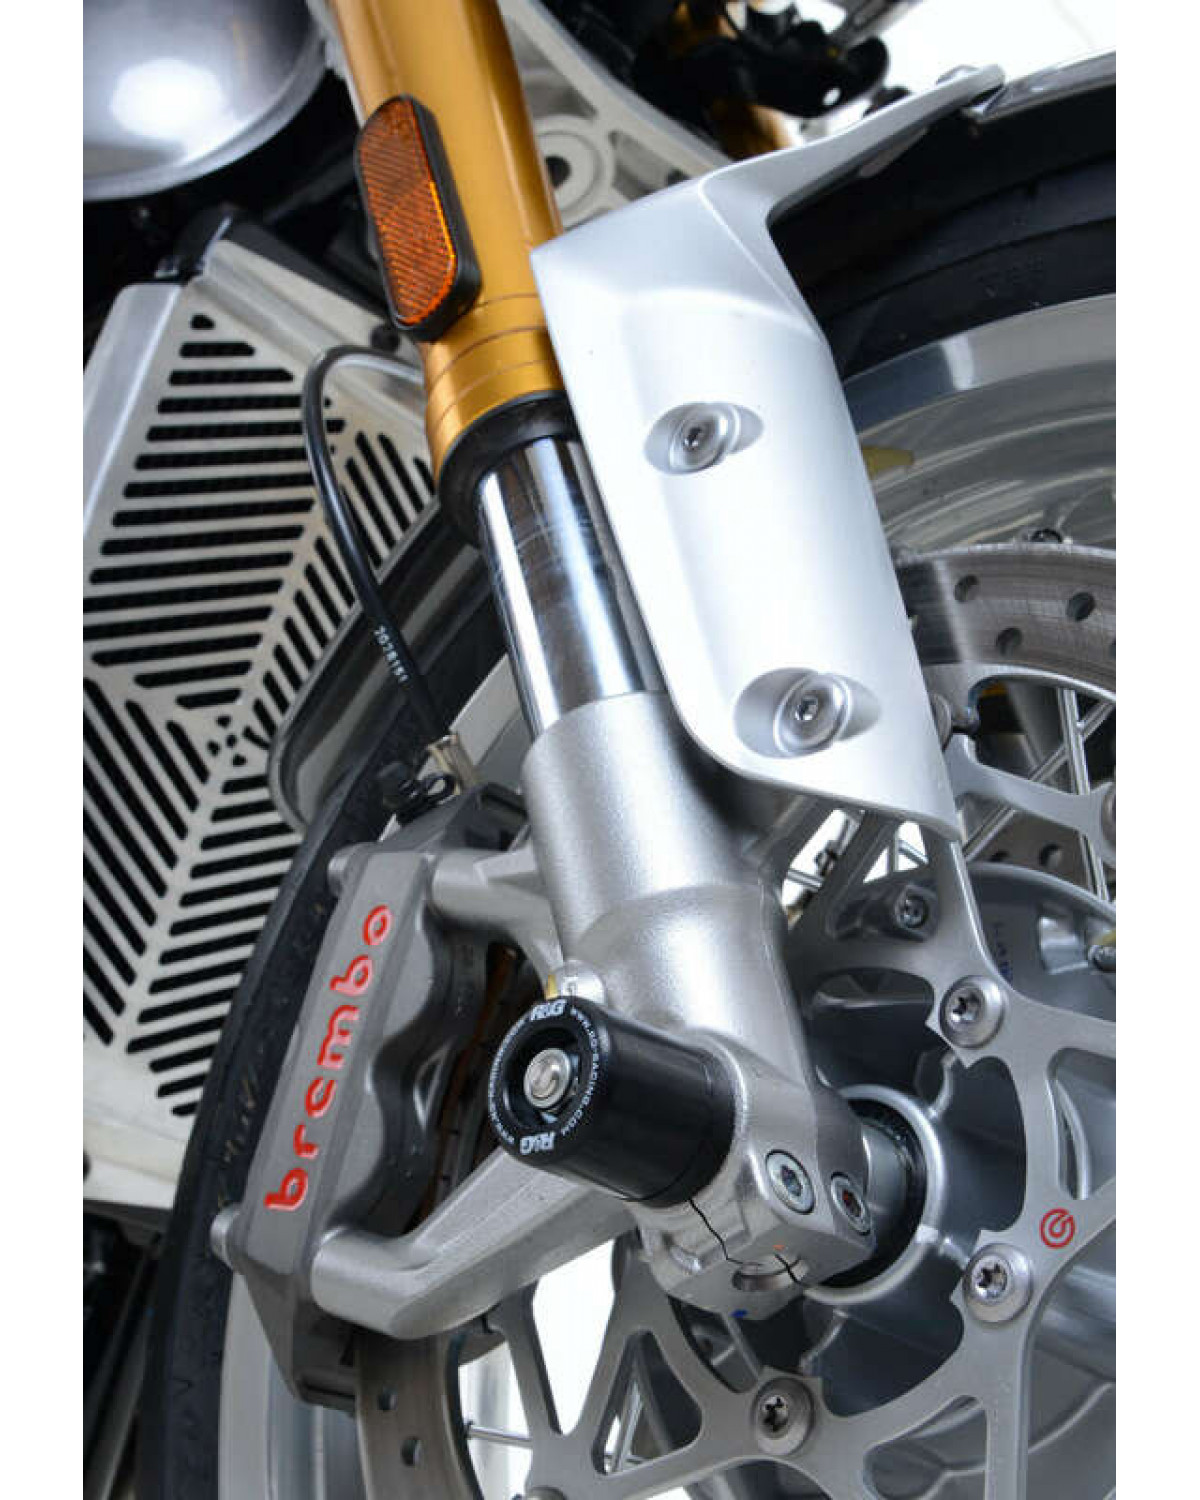 protection de fourche moto RG RACING pour proteger votre moto en